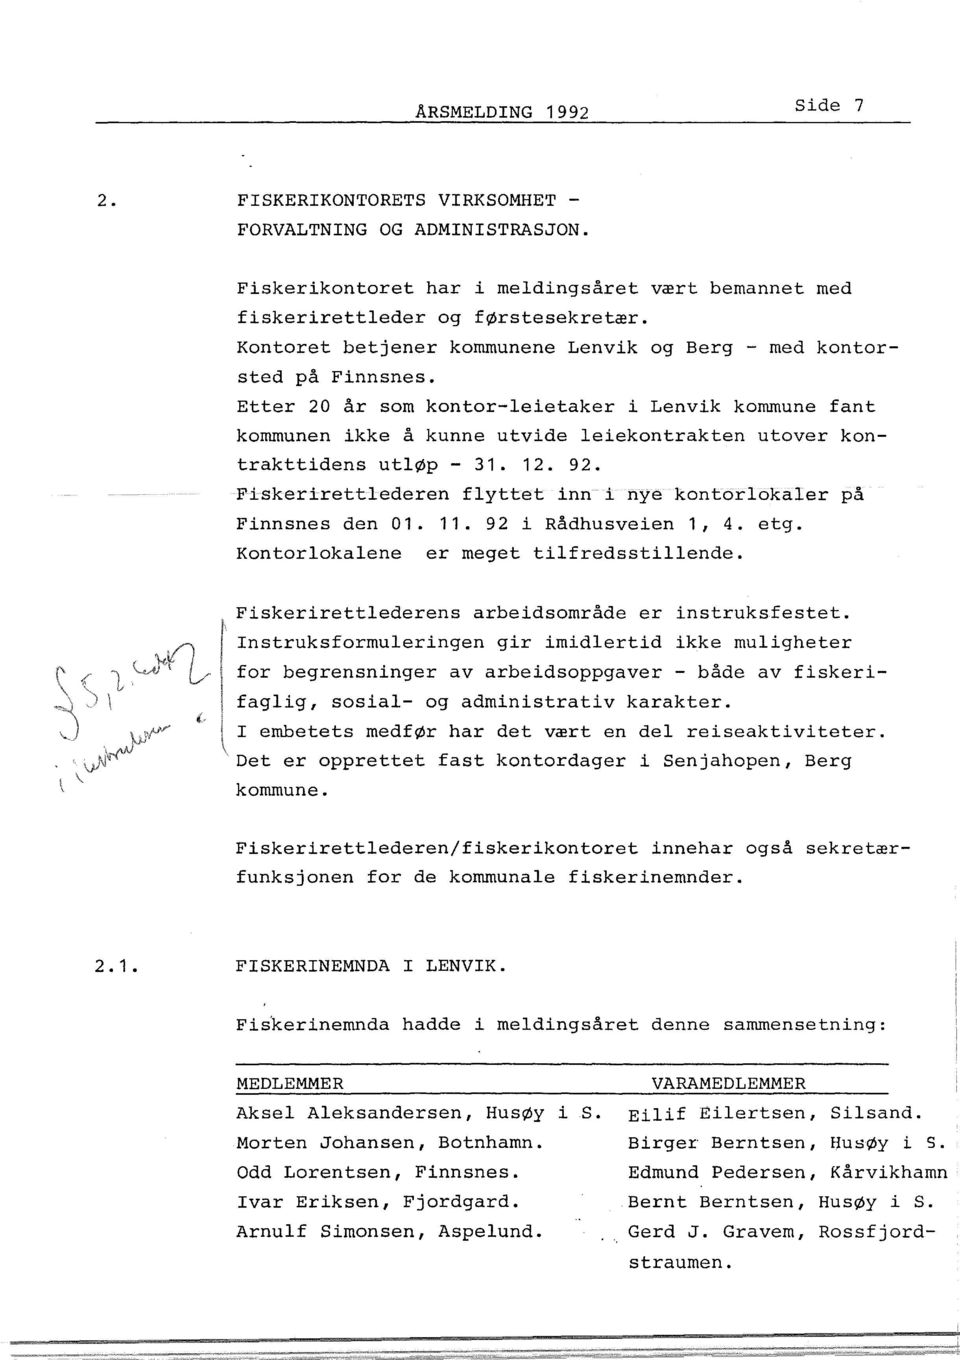 Etter 20 år som kontor-leietaker i Lenvik kommune fant kommunen ikke å kunne utvide leiekontrakten utover kontrakttidens utløp- 31. 12. 92.